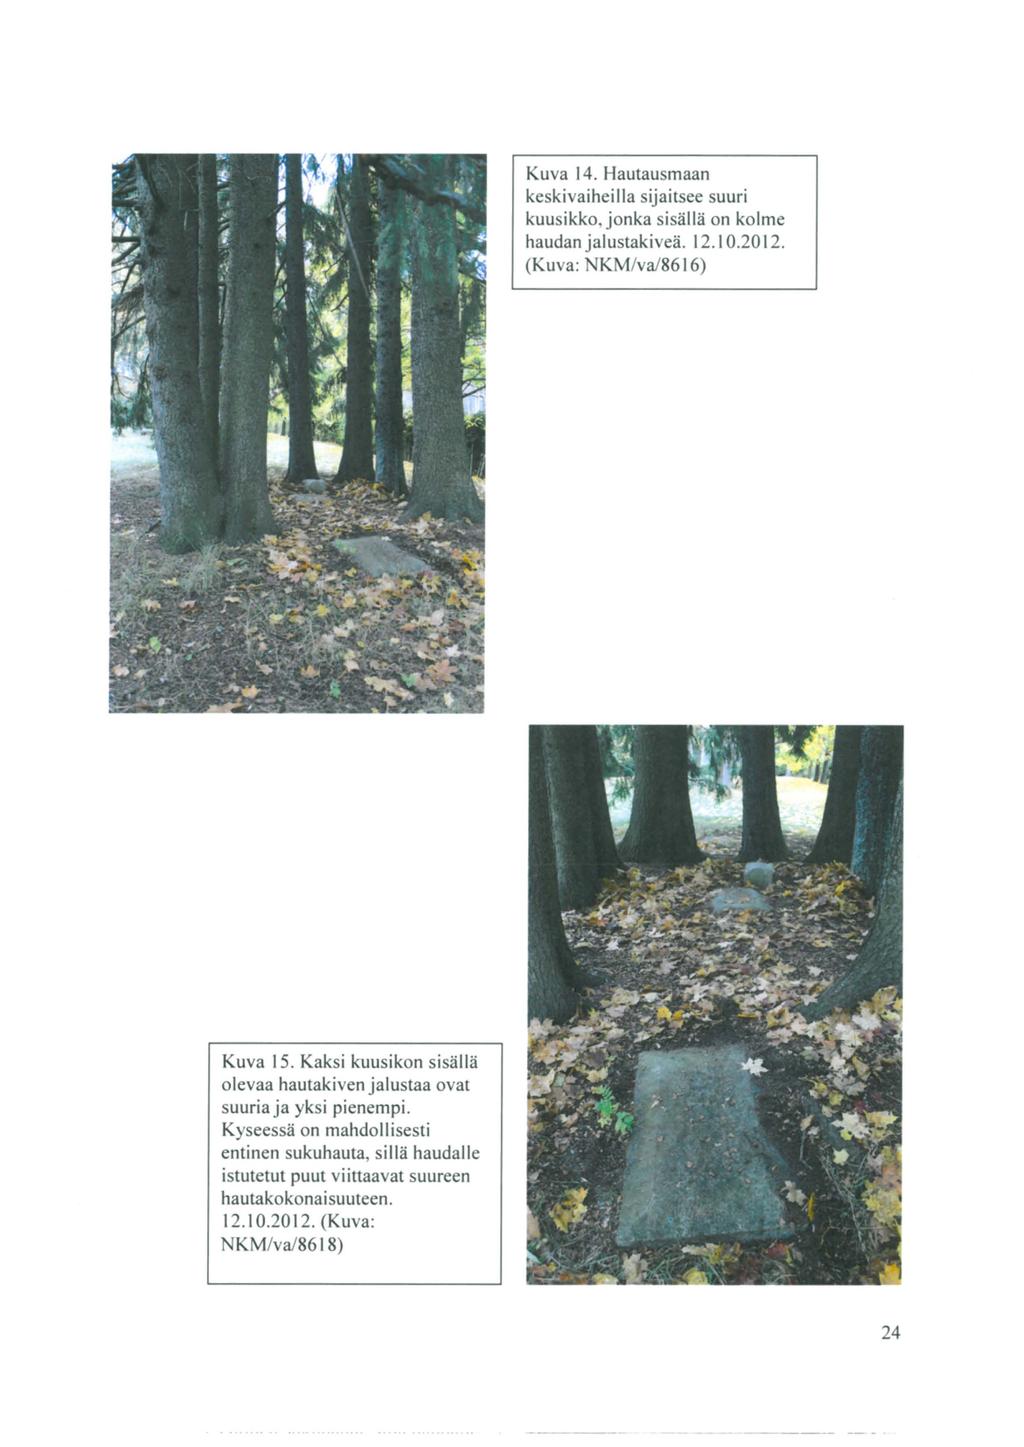 Kuva 14. Hautausmaan keskivaiheilla sijaitsee suuri kuusikko, jonka sisällä on kolme haudan jalustakiveä. 12.10.2012. (Kuva: NKM/va/8616) Kuva 15.